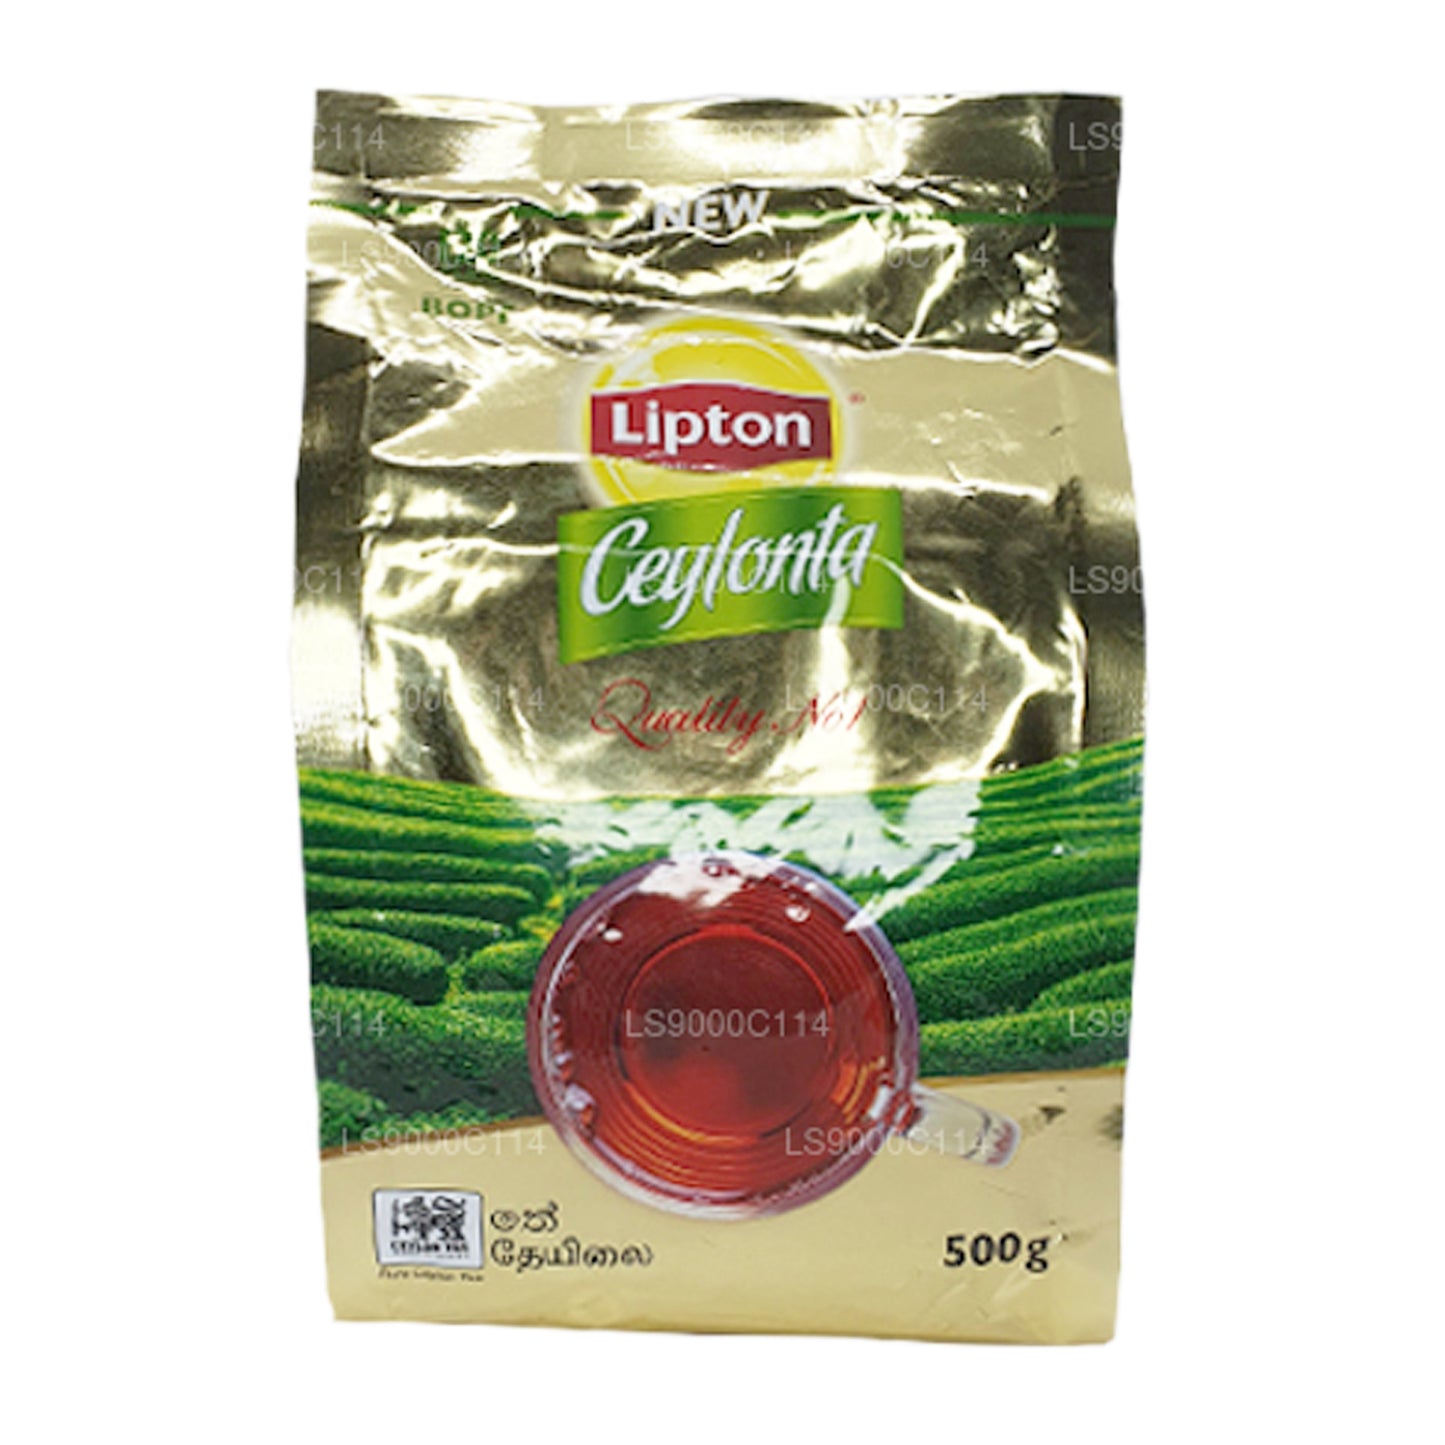 Lipton Ceylonta teblade (500 g)